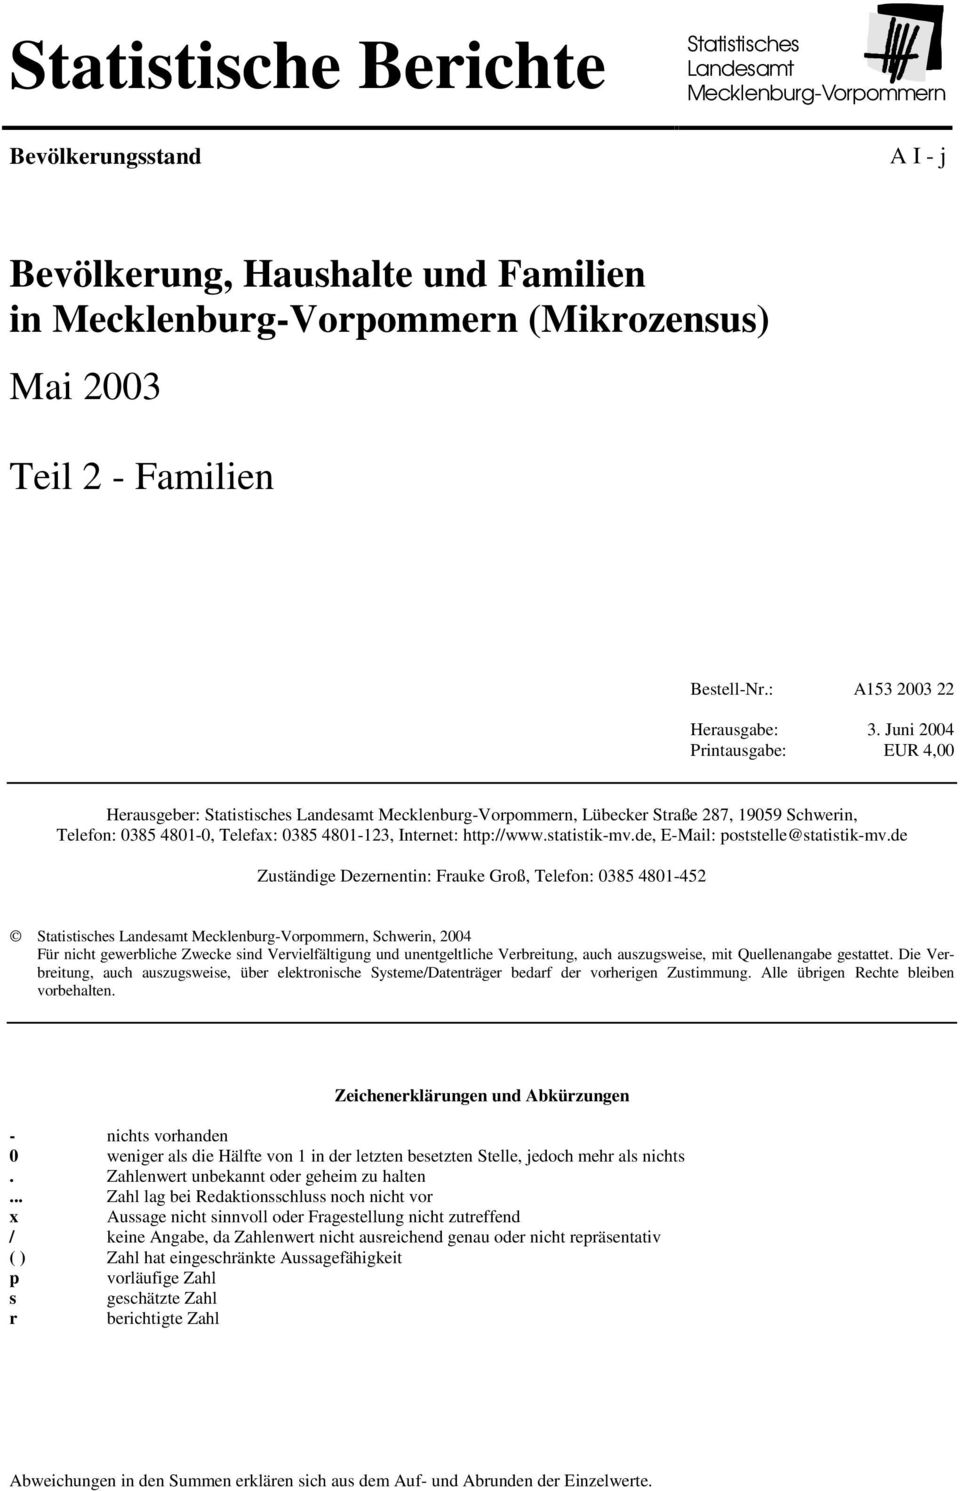 Juni 2004 Printausgabe: EUR 4,00 Herausgeber: Statistisches Landesamt Mecklenburg-Vorpommern, Lübecker Straße 287, 19059 Schwerin, Telefon: 0385 4801-0, Telefax: 0385 4801-123, Internet: http://www.